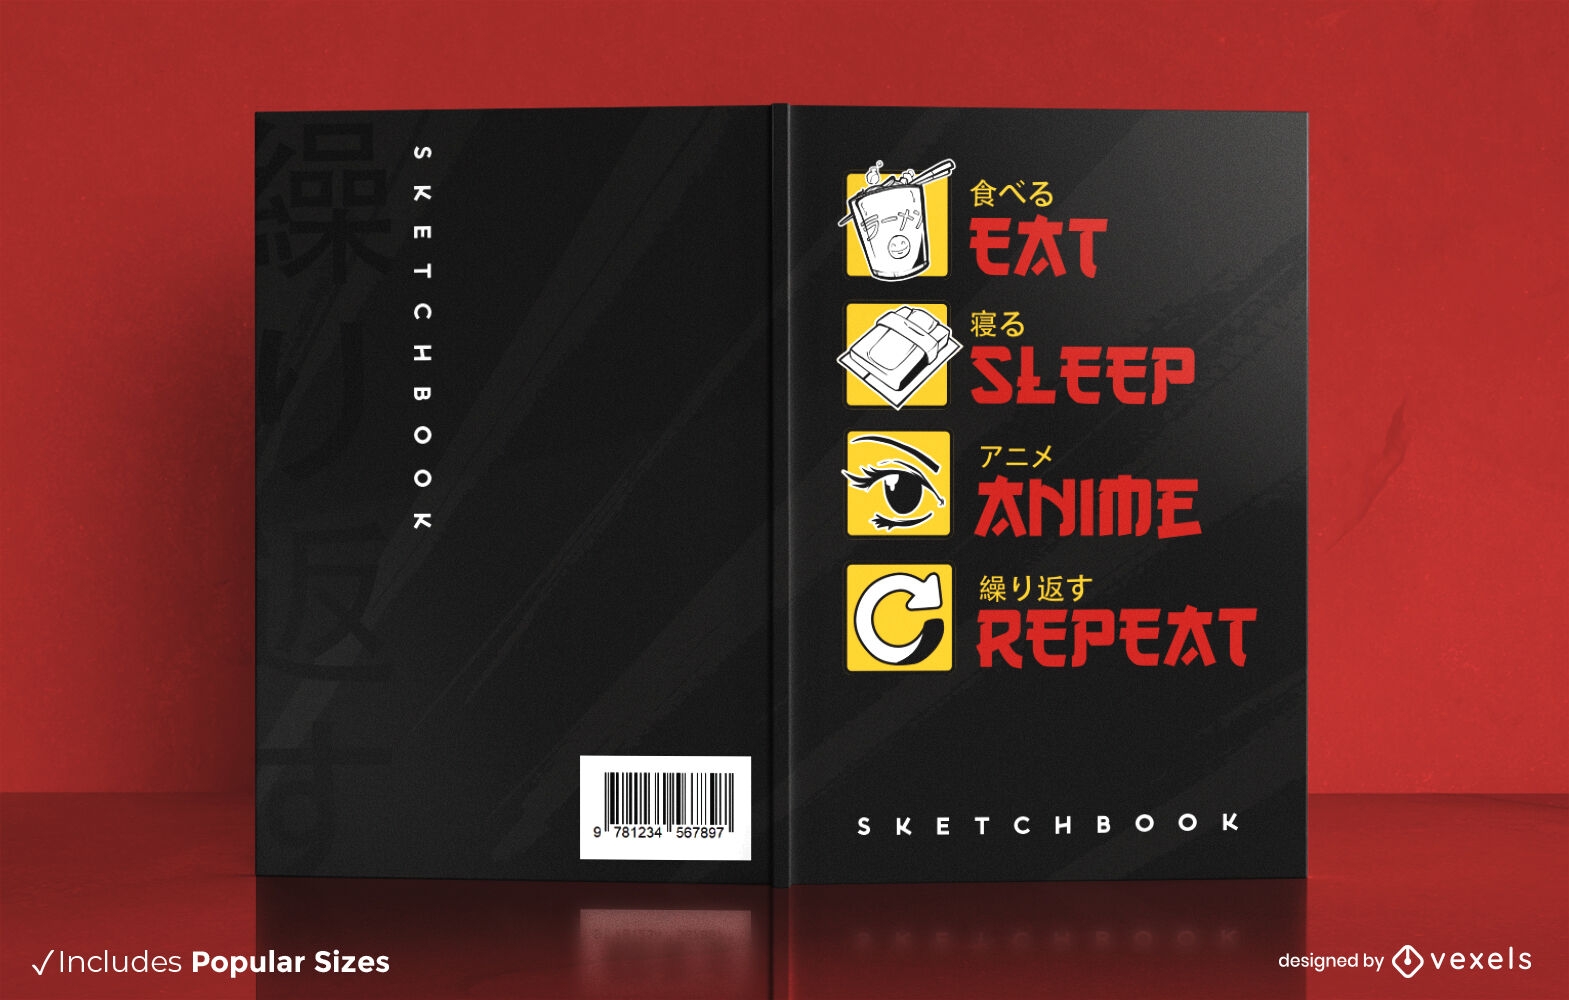 Come, duerme y mira el dise?o de la portada del libro de anime.